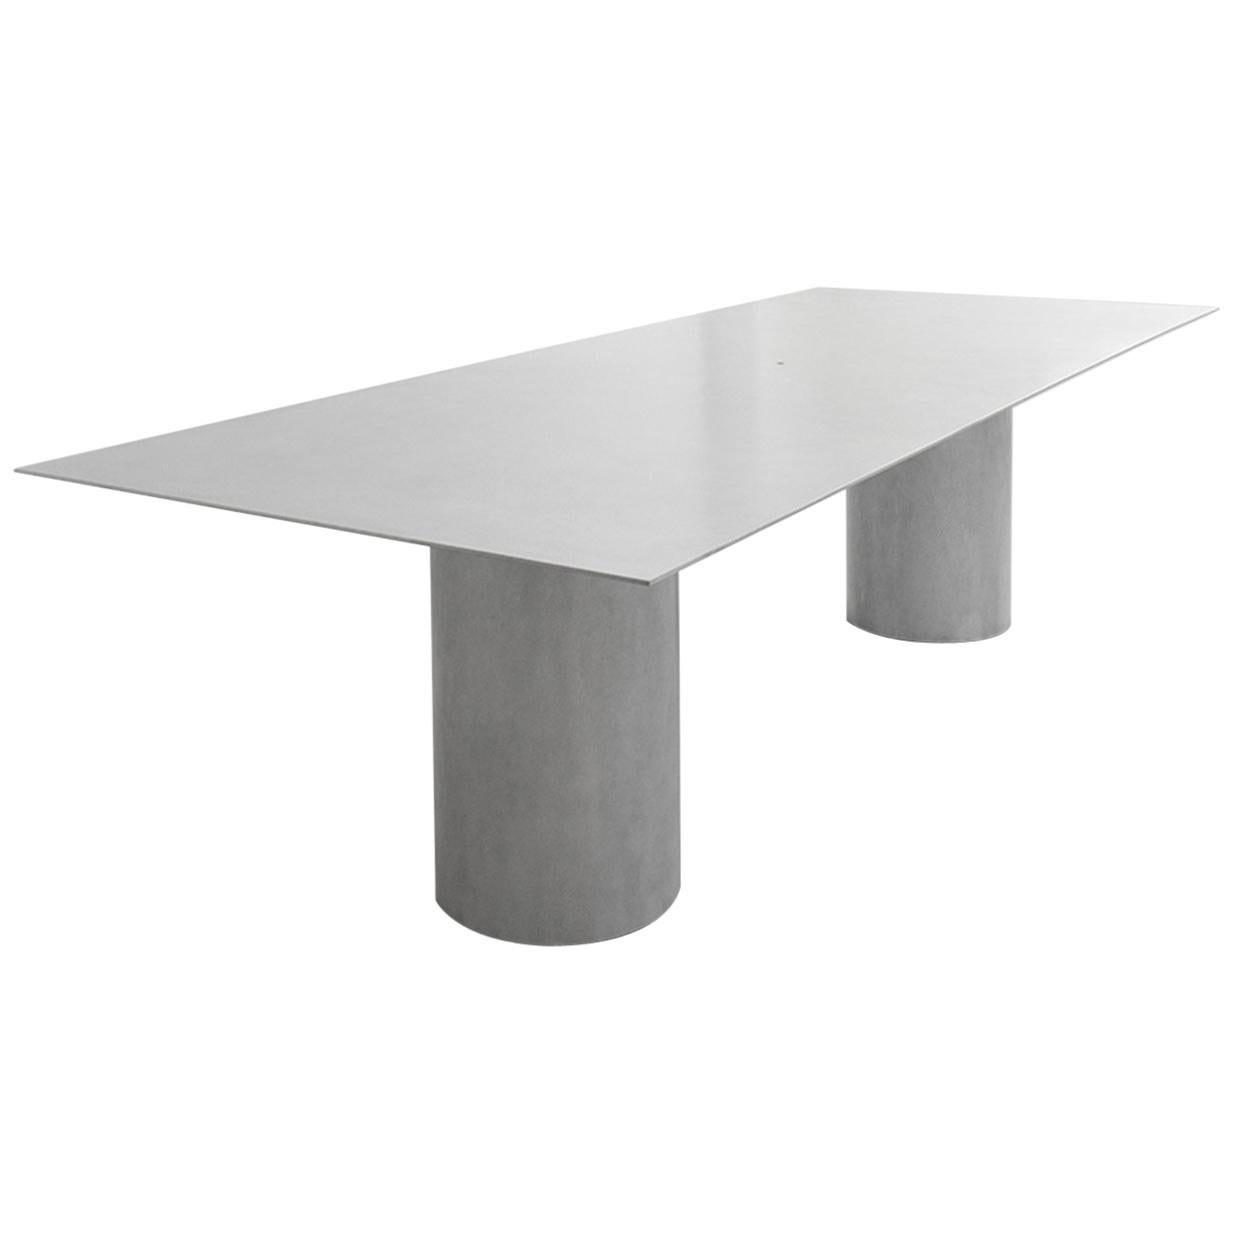 Equilibrium Rectangular Table in Aluminum by Guglielmo Poletti